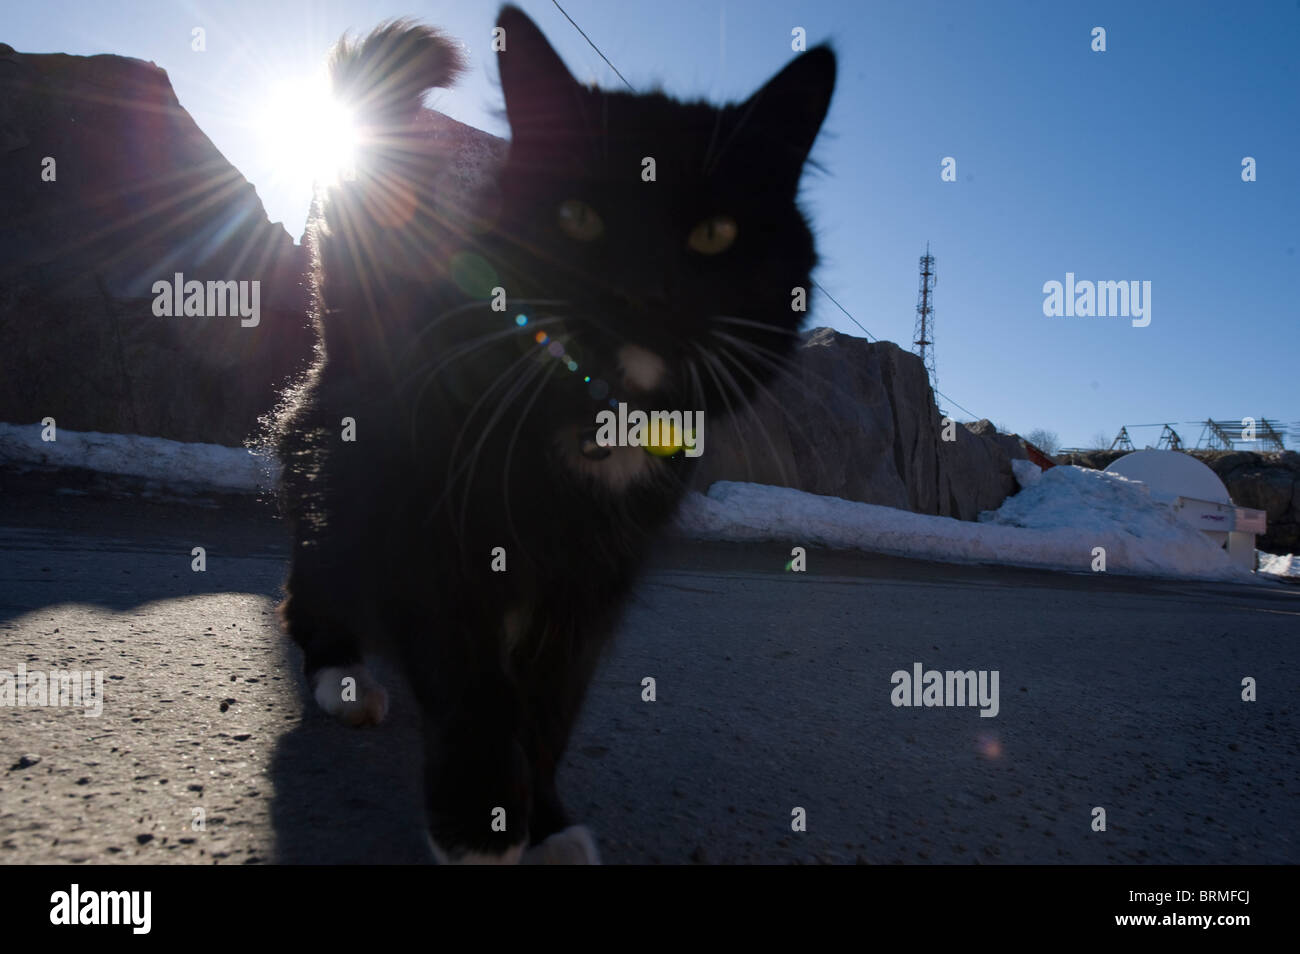 Tame cat, close up Stock Photo